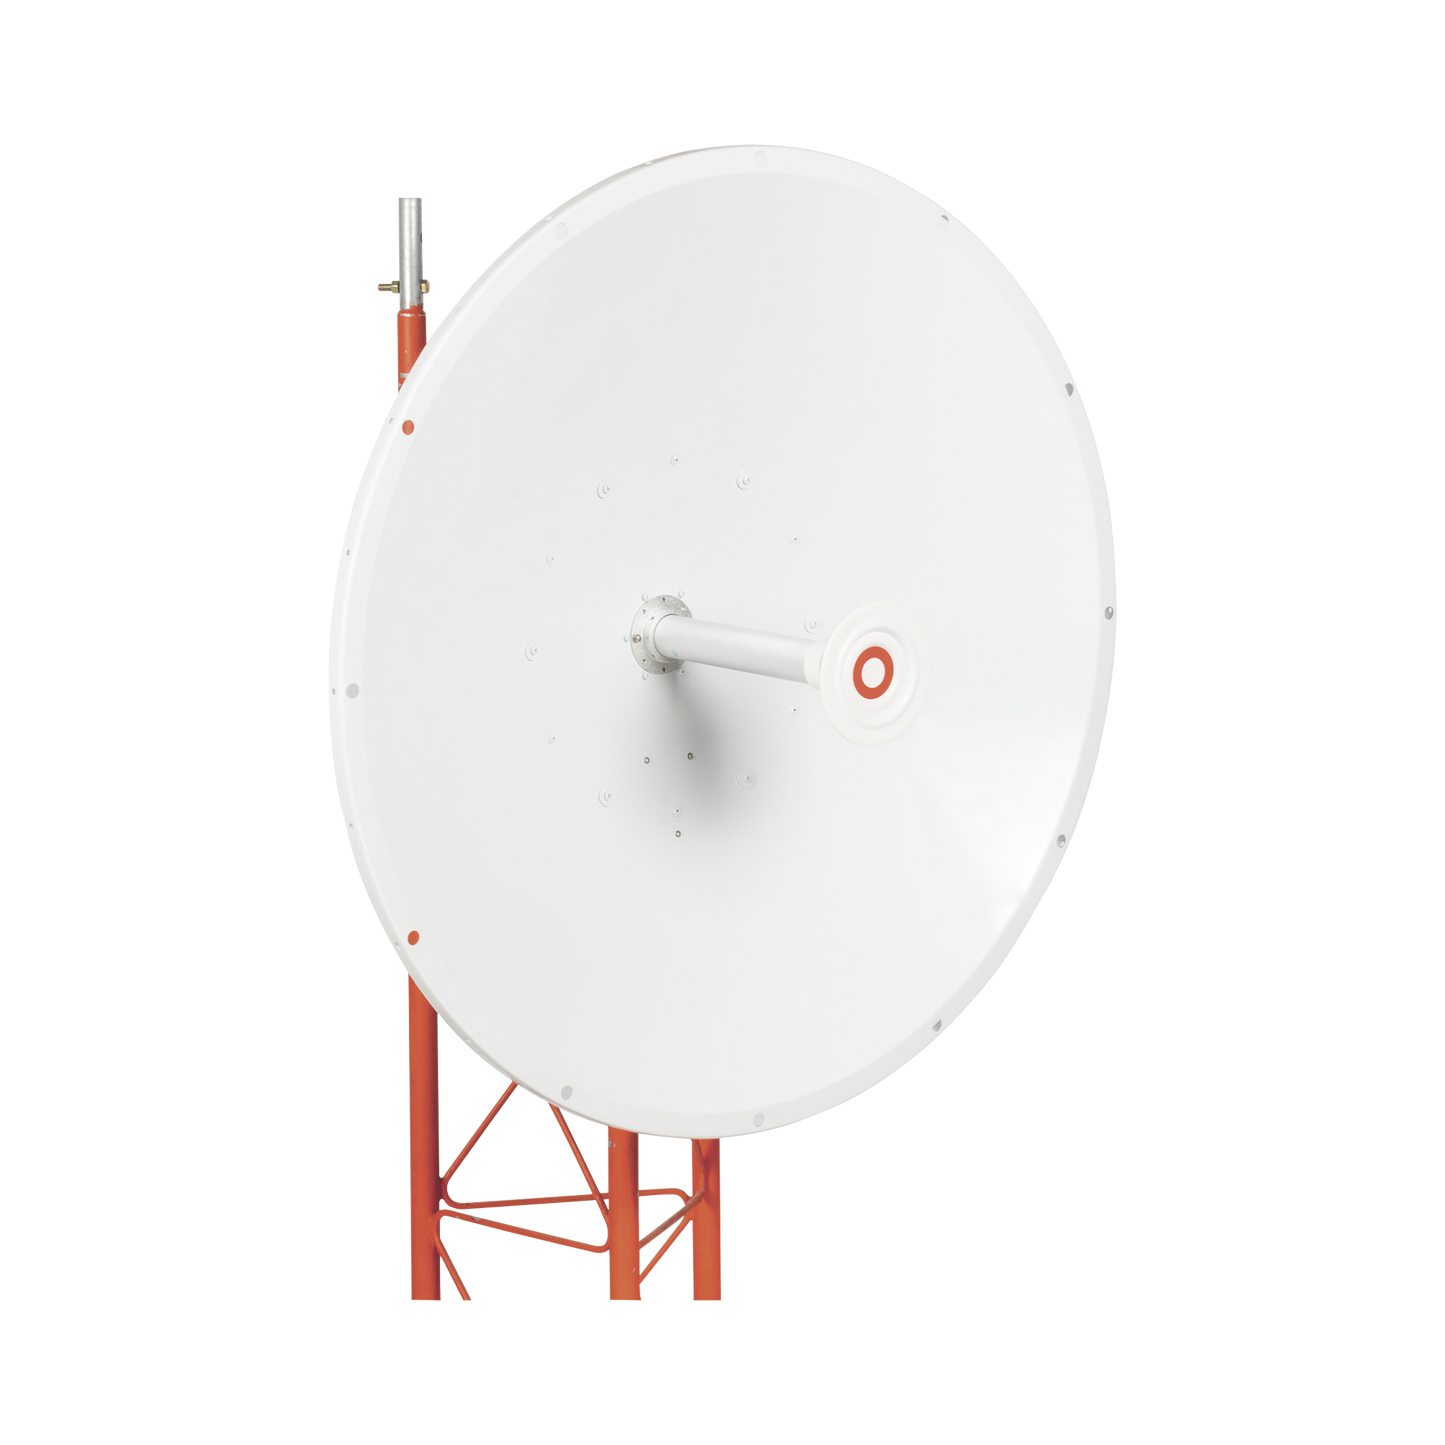 Antena direccional de 3ft, 4.9 a 6.5 GHz, Ganancia 34 dBi, Conectores N-hembra, Polarización doble, incluye montaje para torre o mástil